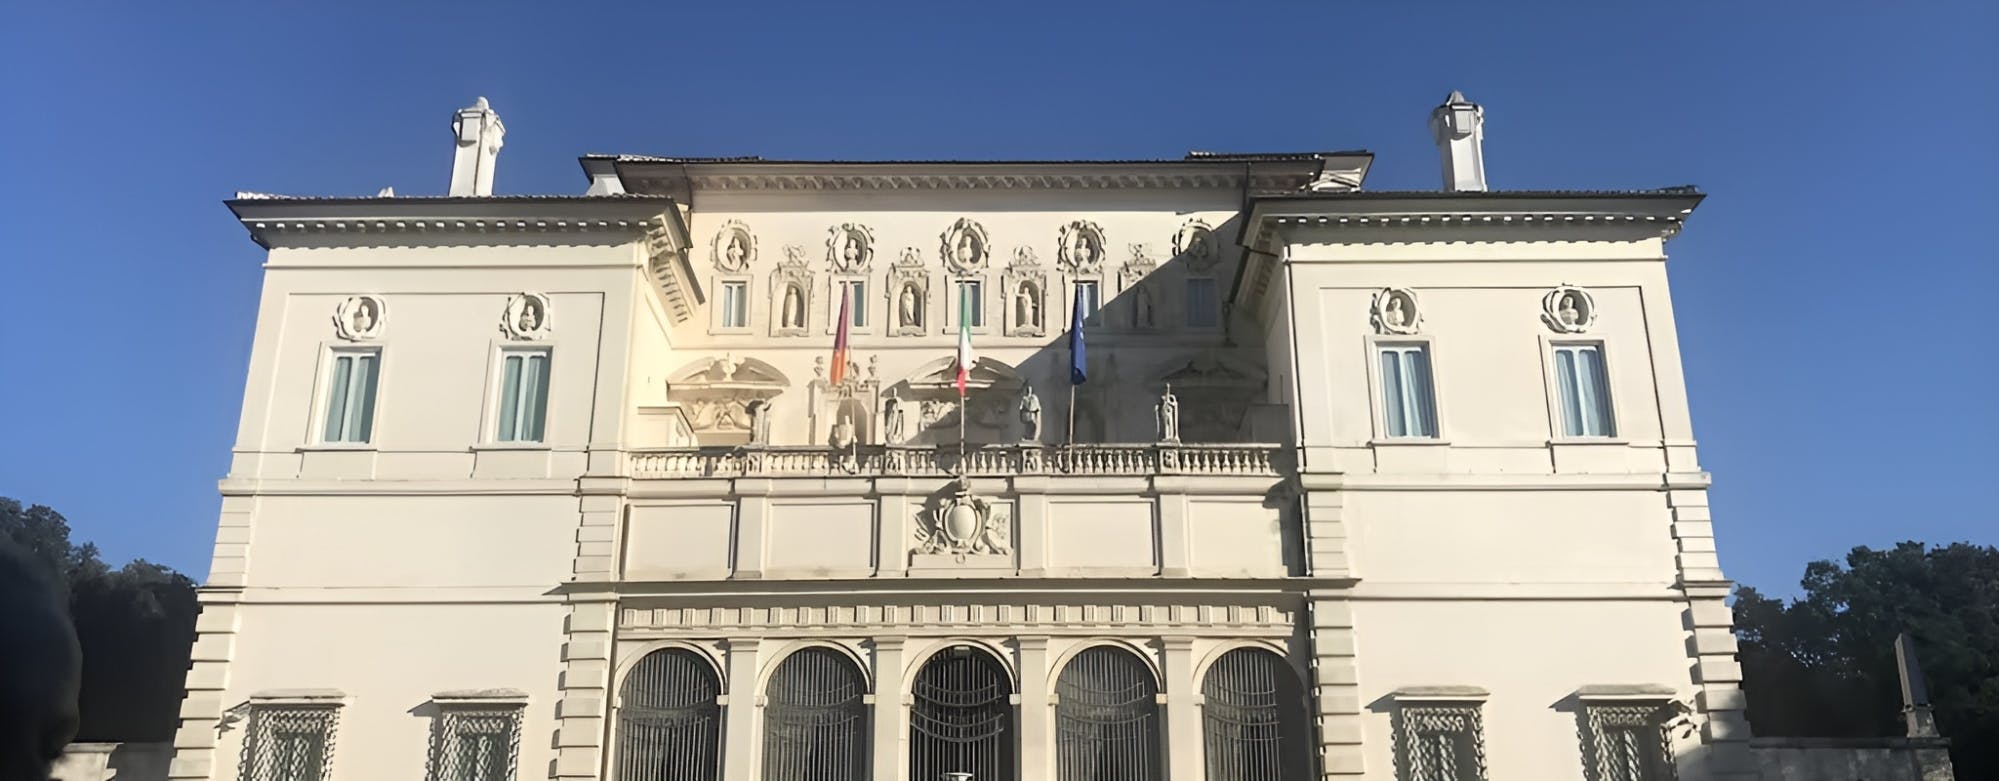 Visita guiada semiprivada a la Galería Borghese